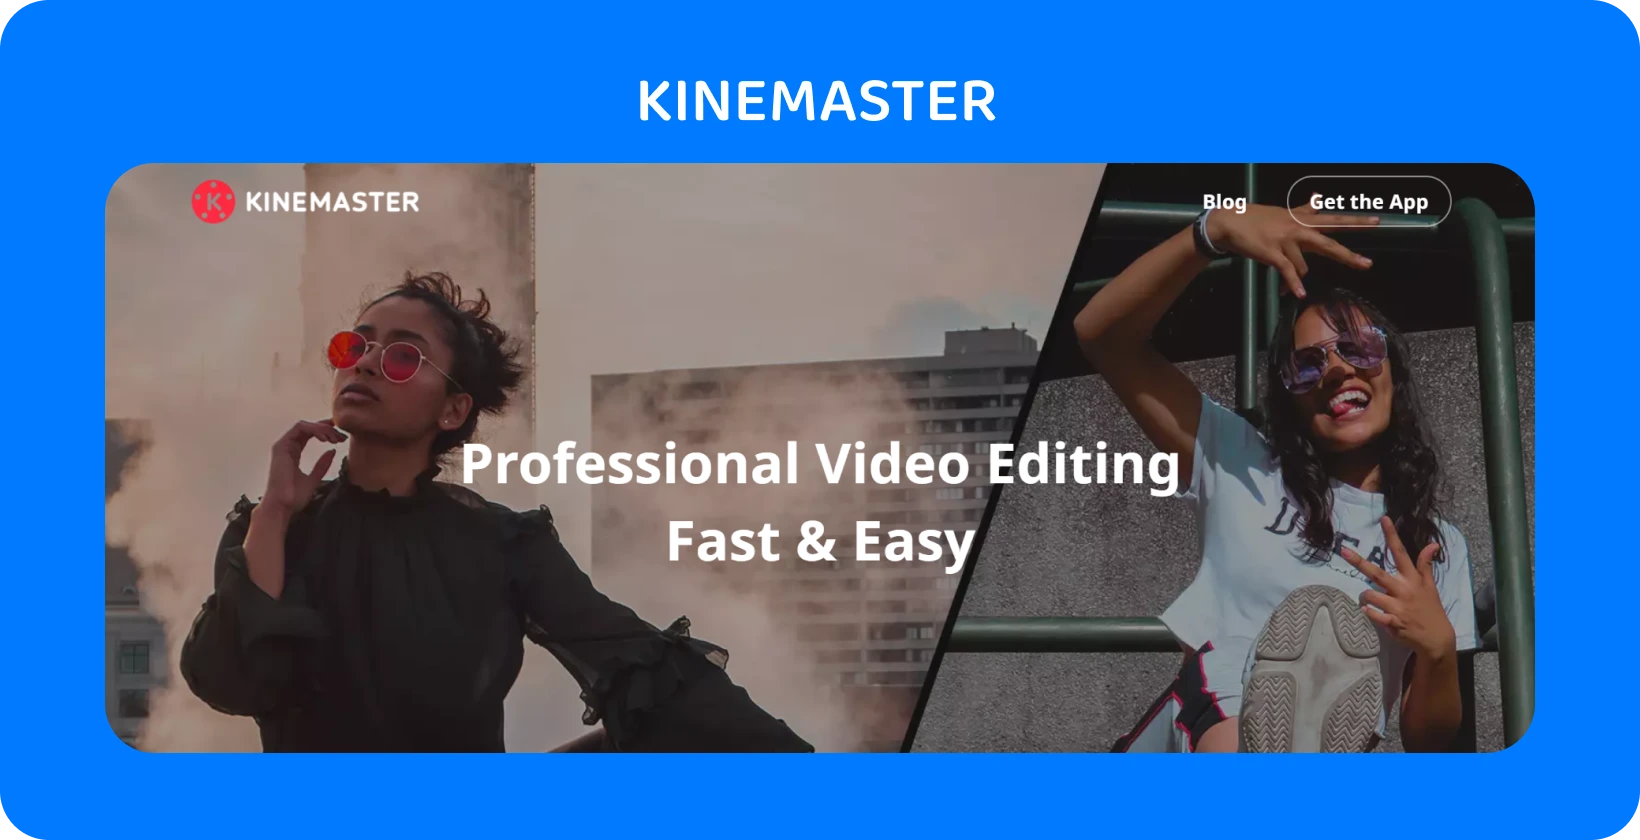 KineMaster реклама на апликација со два модели кои позираат, истакнувајќи професионално уредување на видео кое е брзо и лесно.